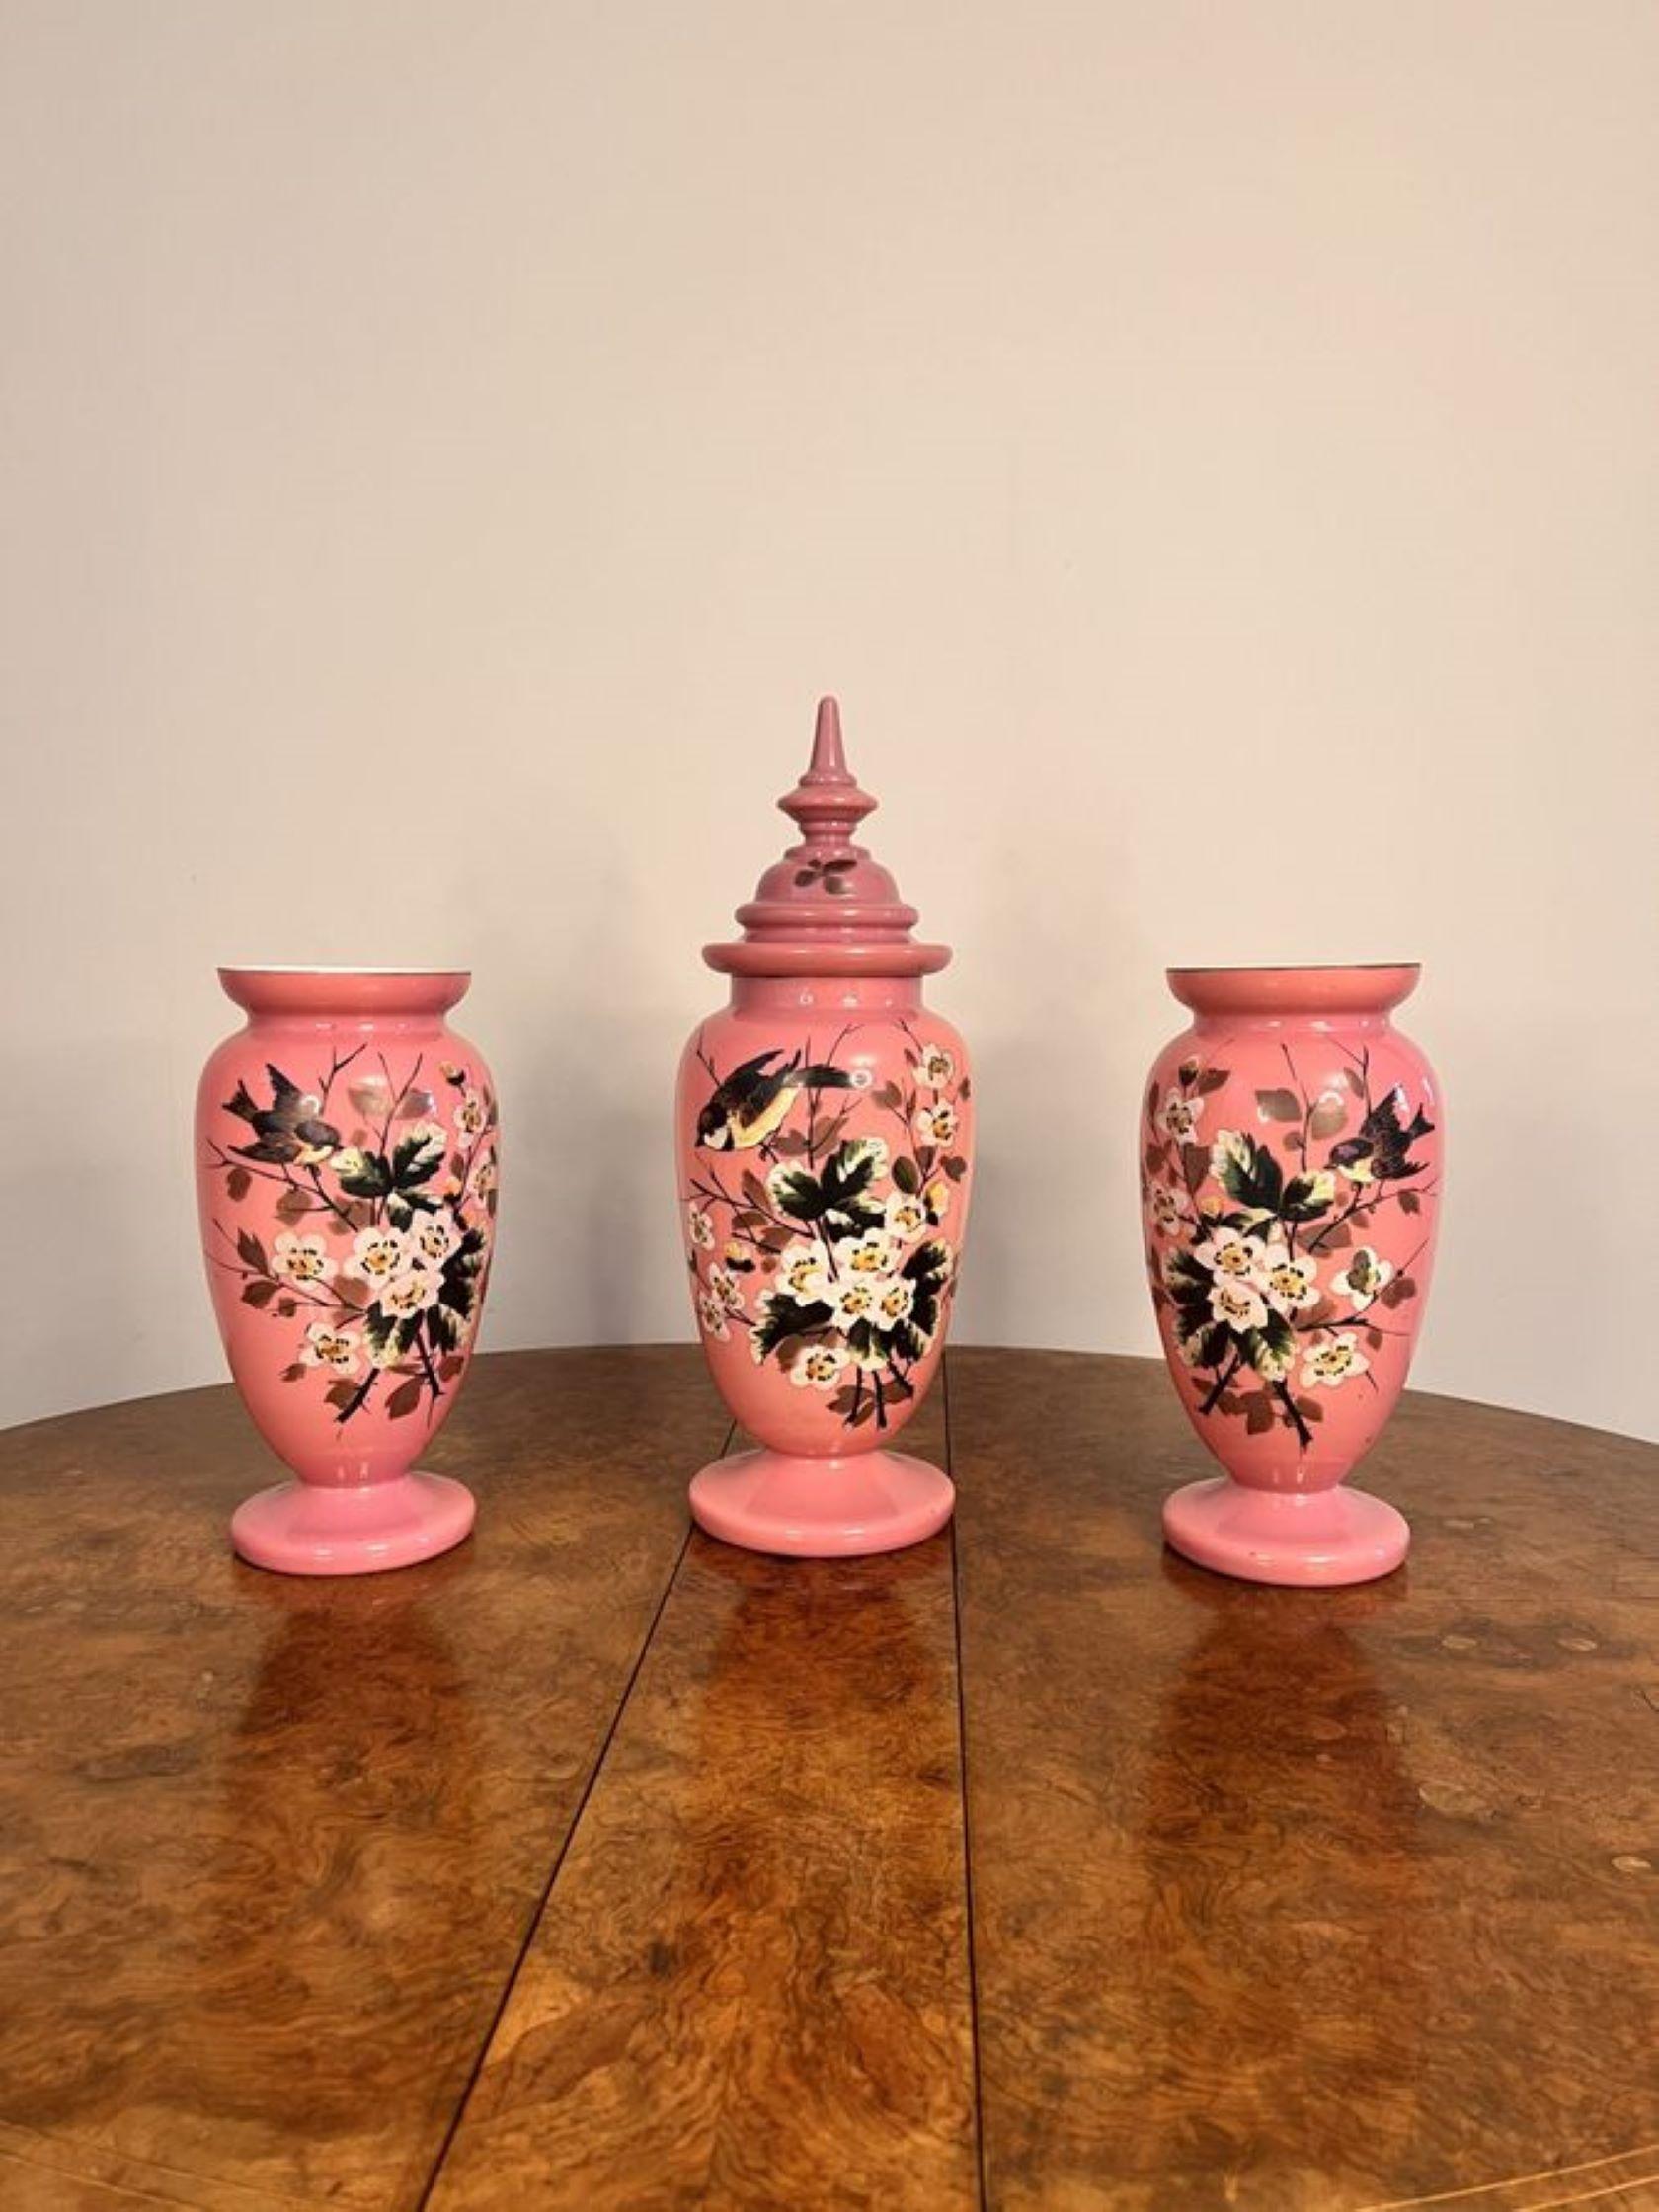 Atemberaubende Qualität antiken viktorianischen Garnitur von Glasvasen, bestehend aus drei Qualität antiken rosa Glasvasen, mit einem Zentrum mit Deckel Vase mit zwei offenen oben Vasen, fantastische Hand gemalt mit Vögeln und Blumen in wunderbaren